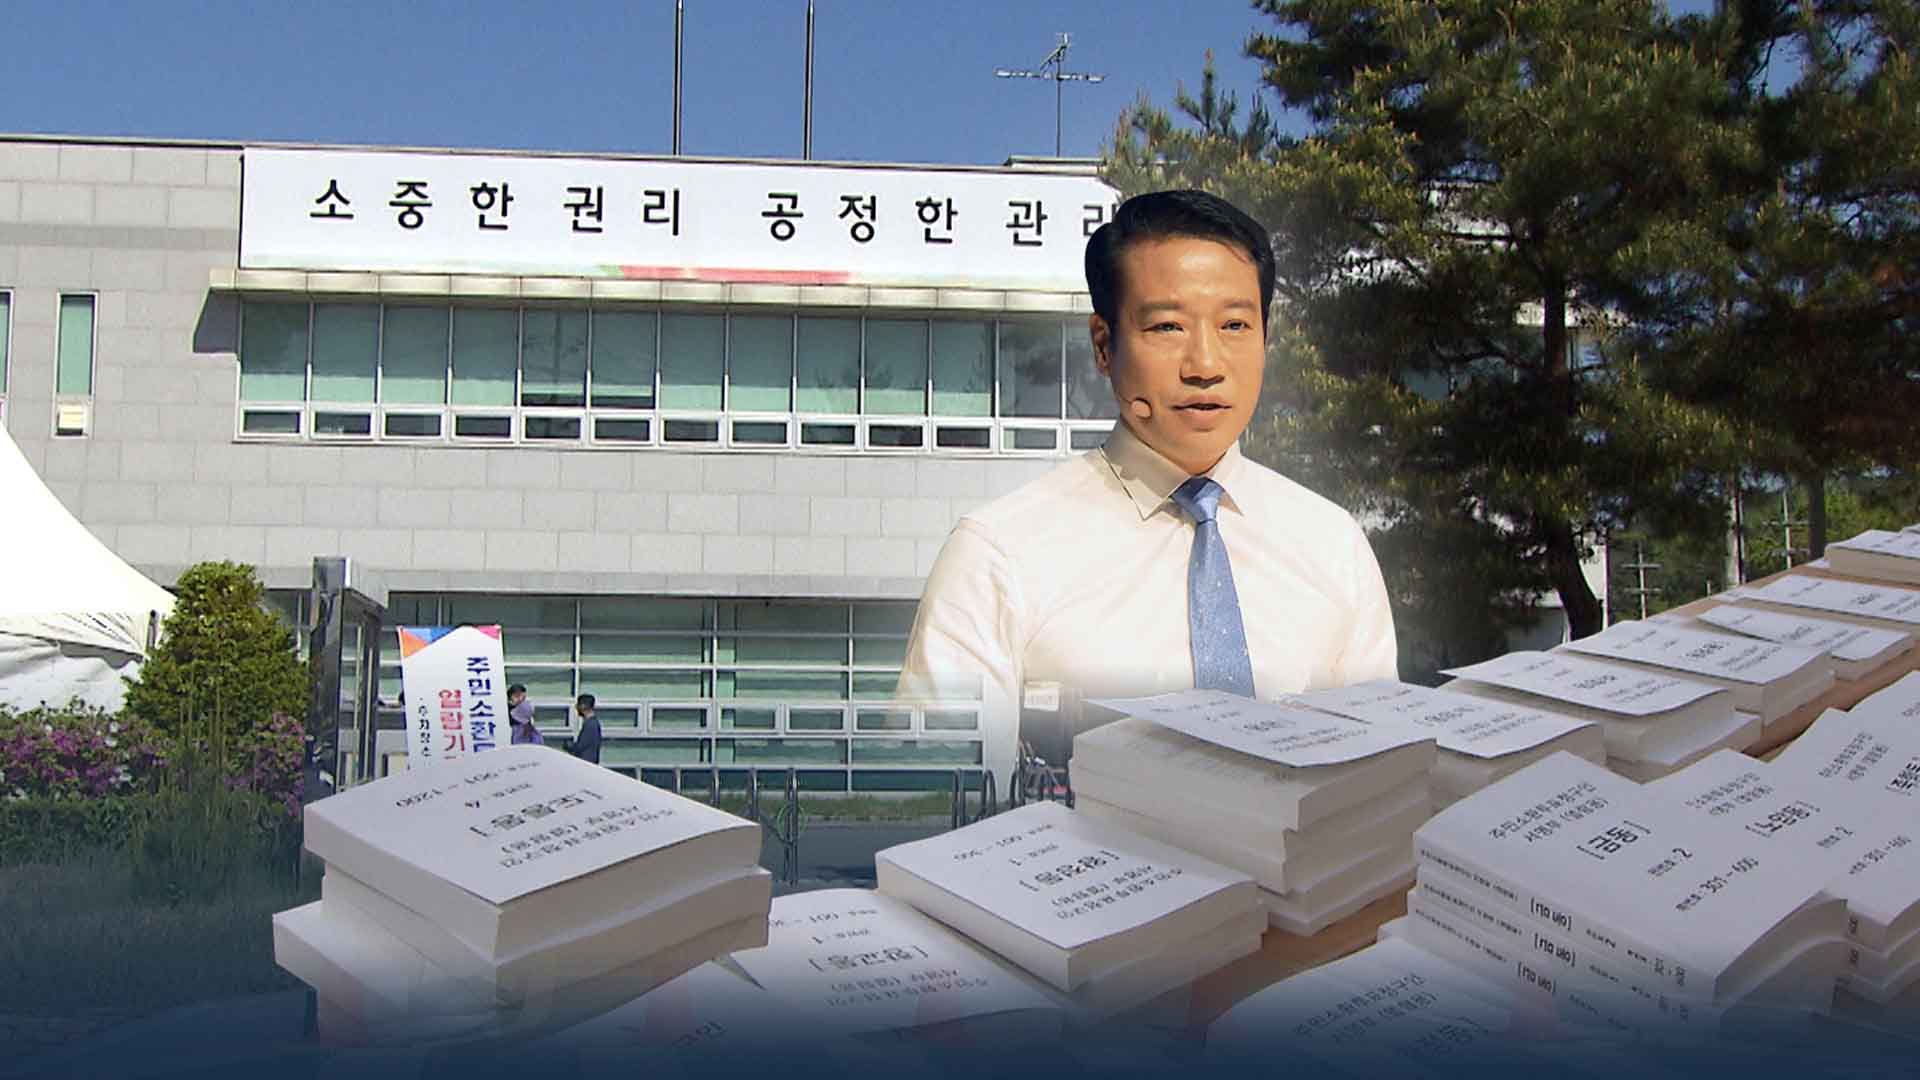 최경식 남원시장 주민소환 무산.. 소환명부 상당수 무효처리